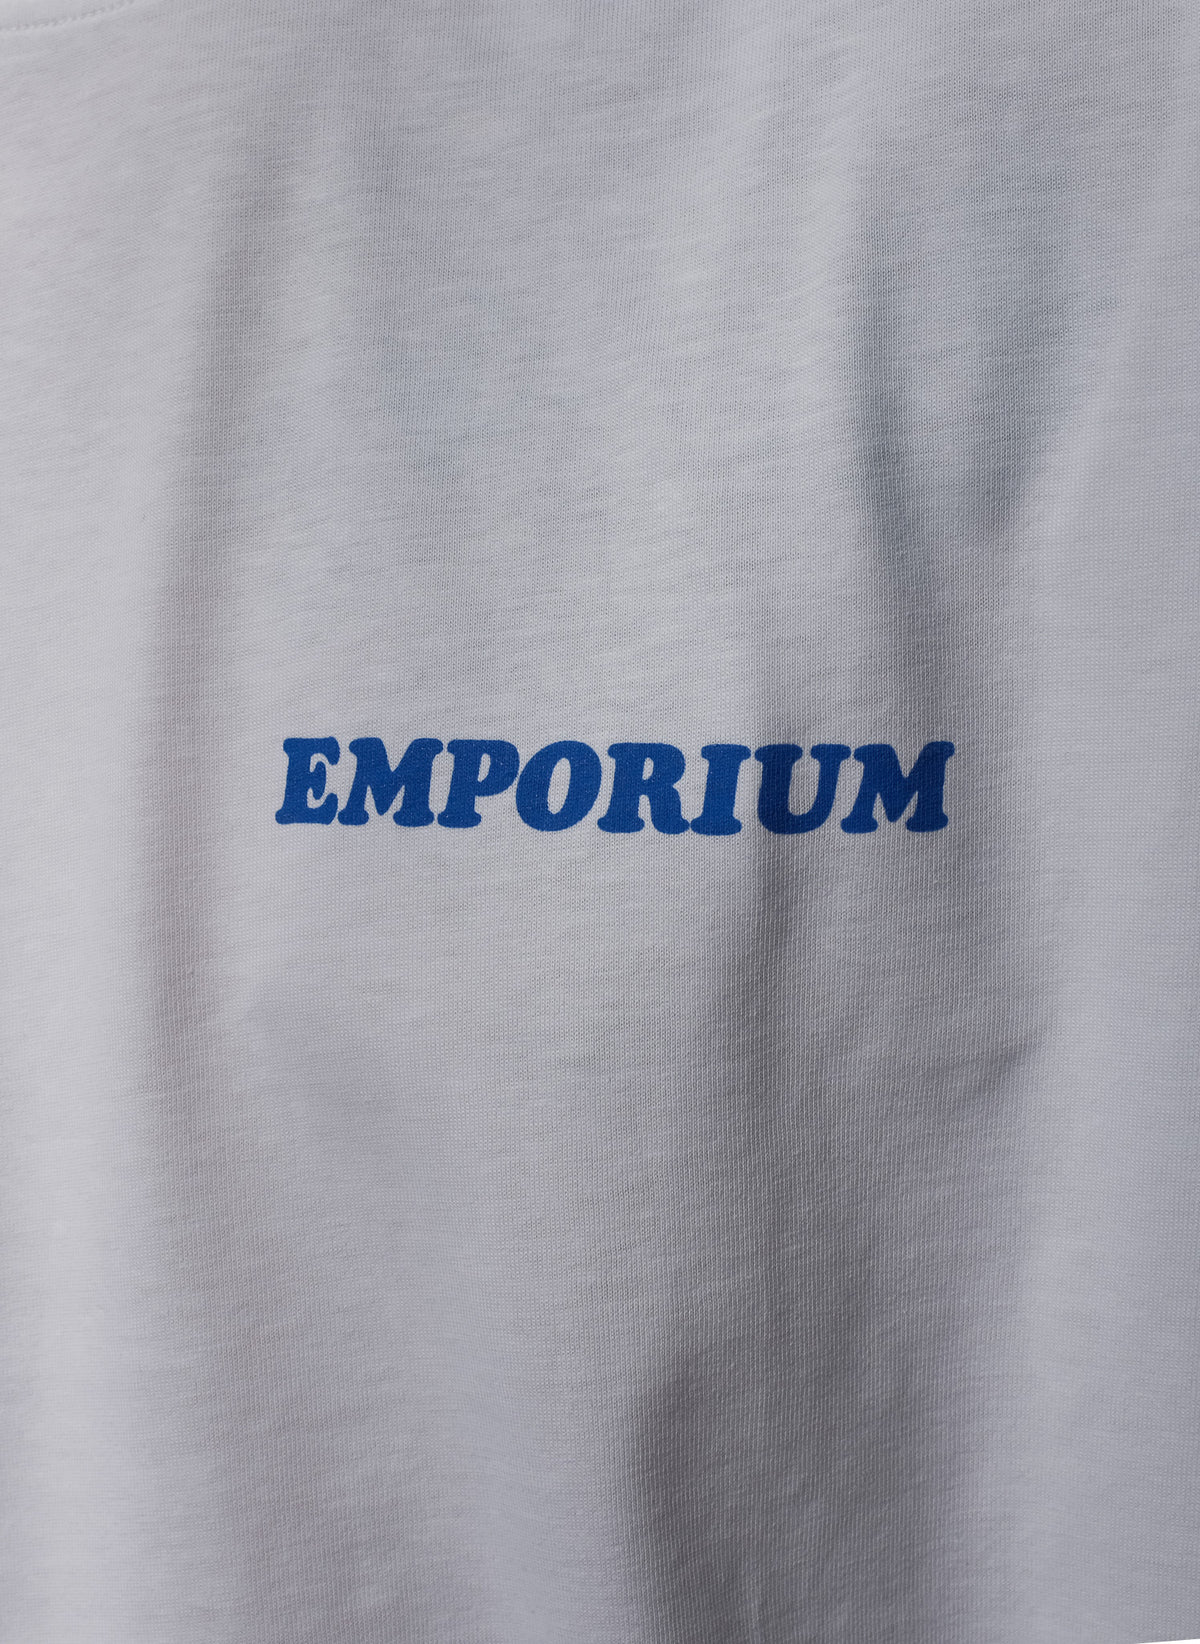 EMPORIUM / LOCAL DEALER LS T-SHIRT WHITE